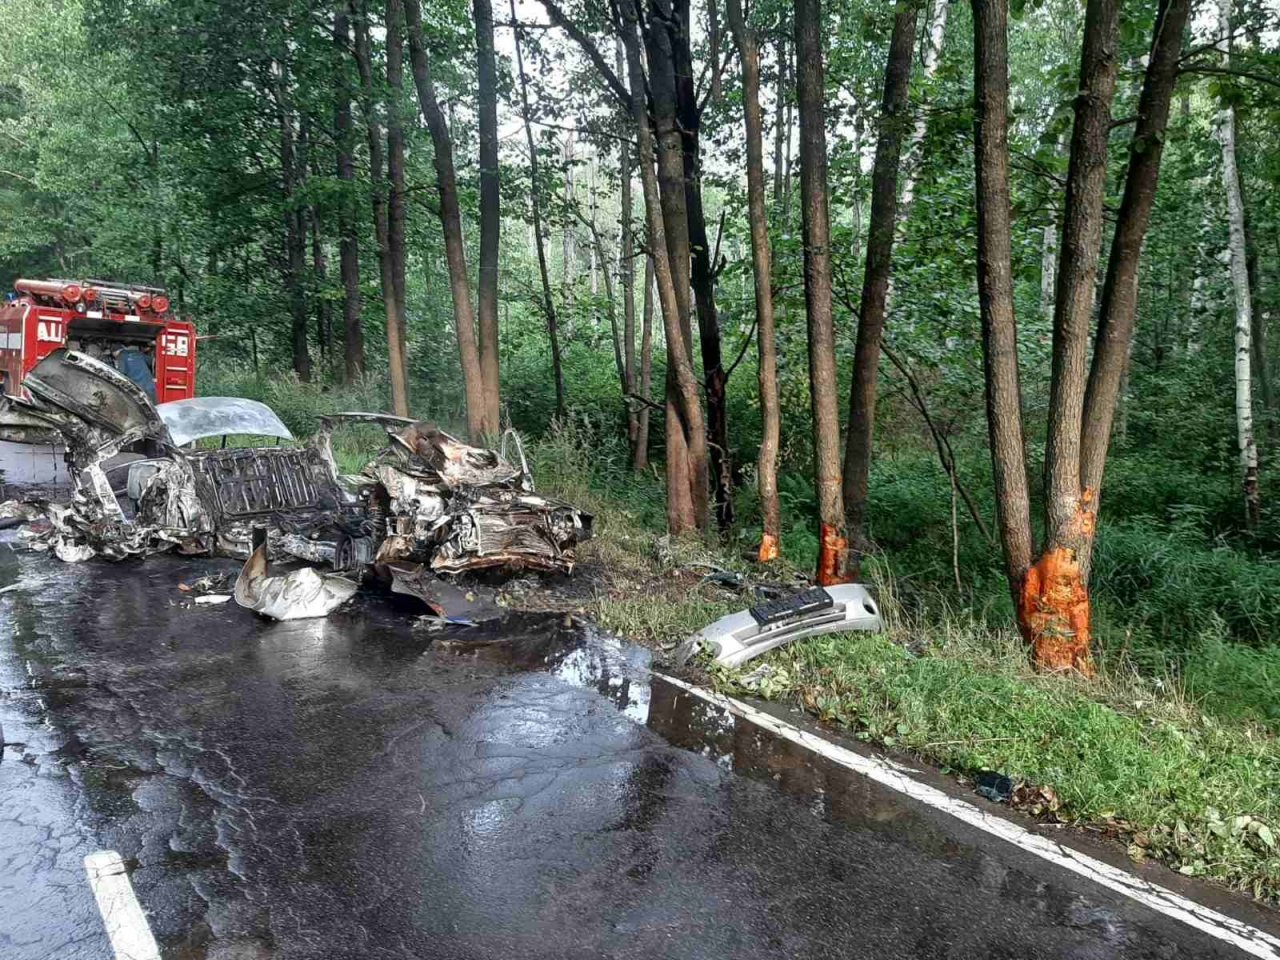 В Гусь-Хрустальном районе до тла сгорел автомобиль после столкновения с деревом